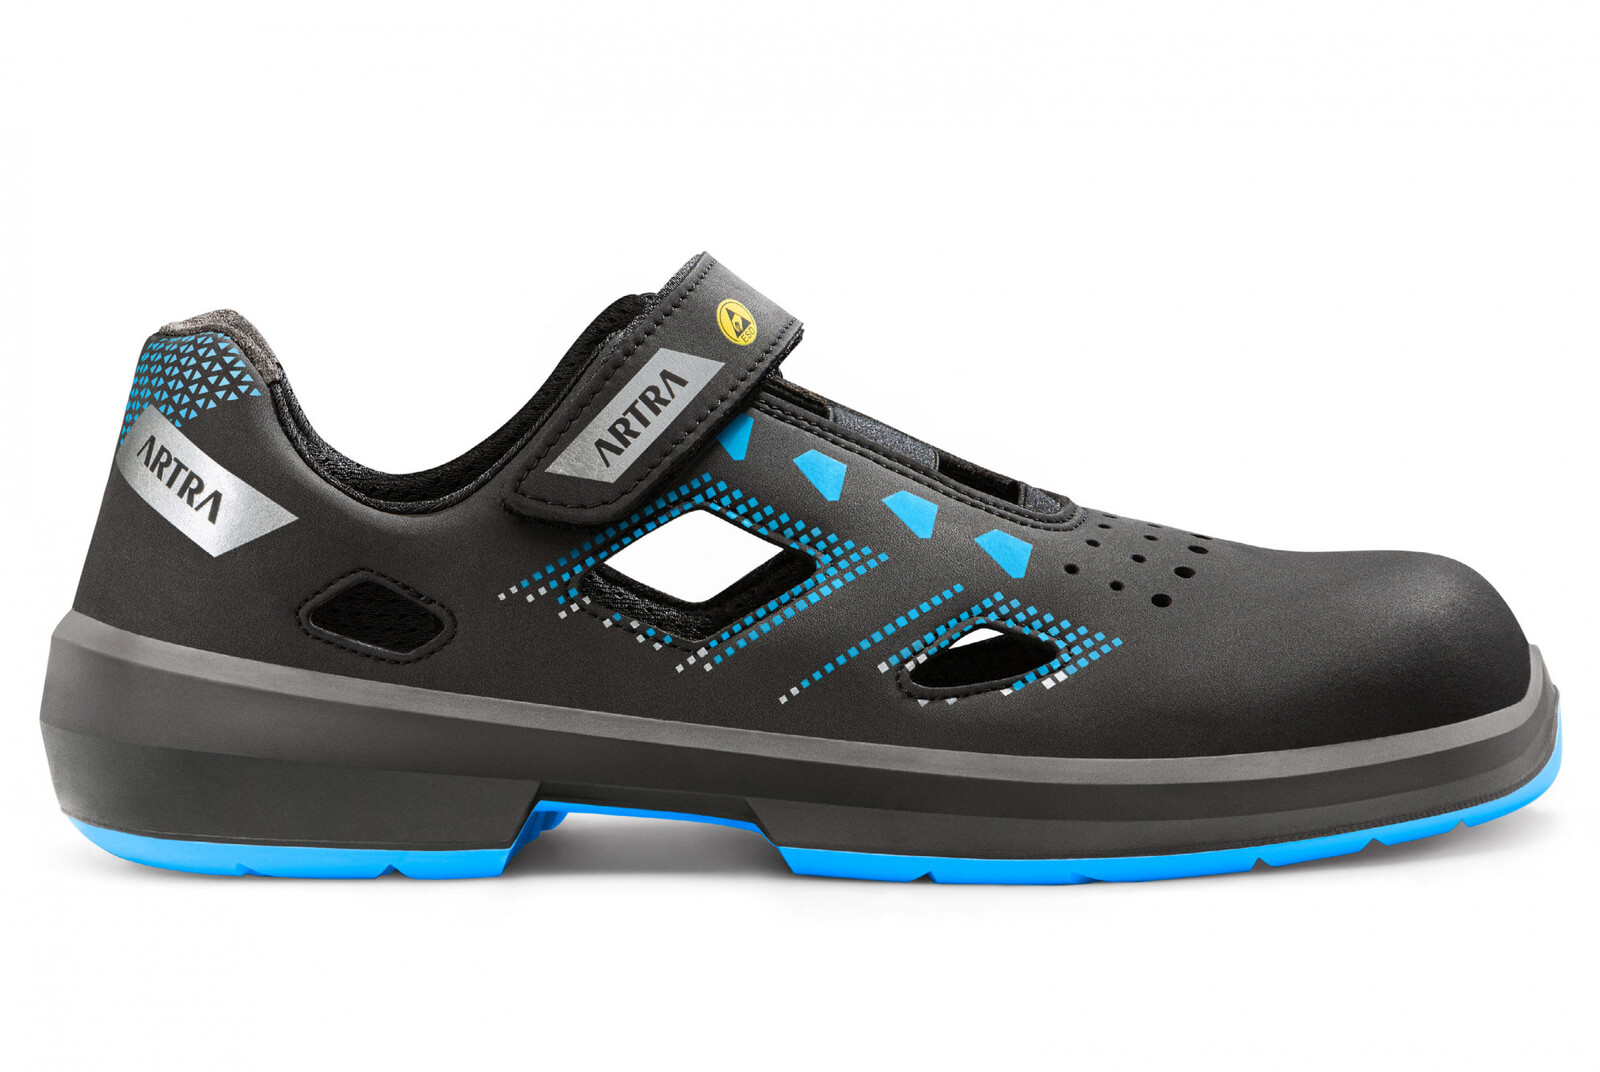 Bezpečnostné sandále Artra Arzo 805 619090 S1P SRC ESD MF - veľkosť: 38, farba: čierna/modrá